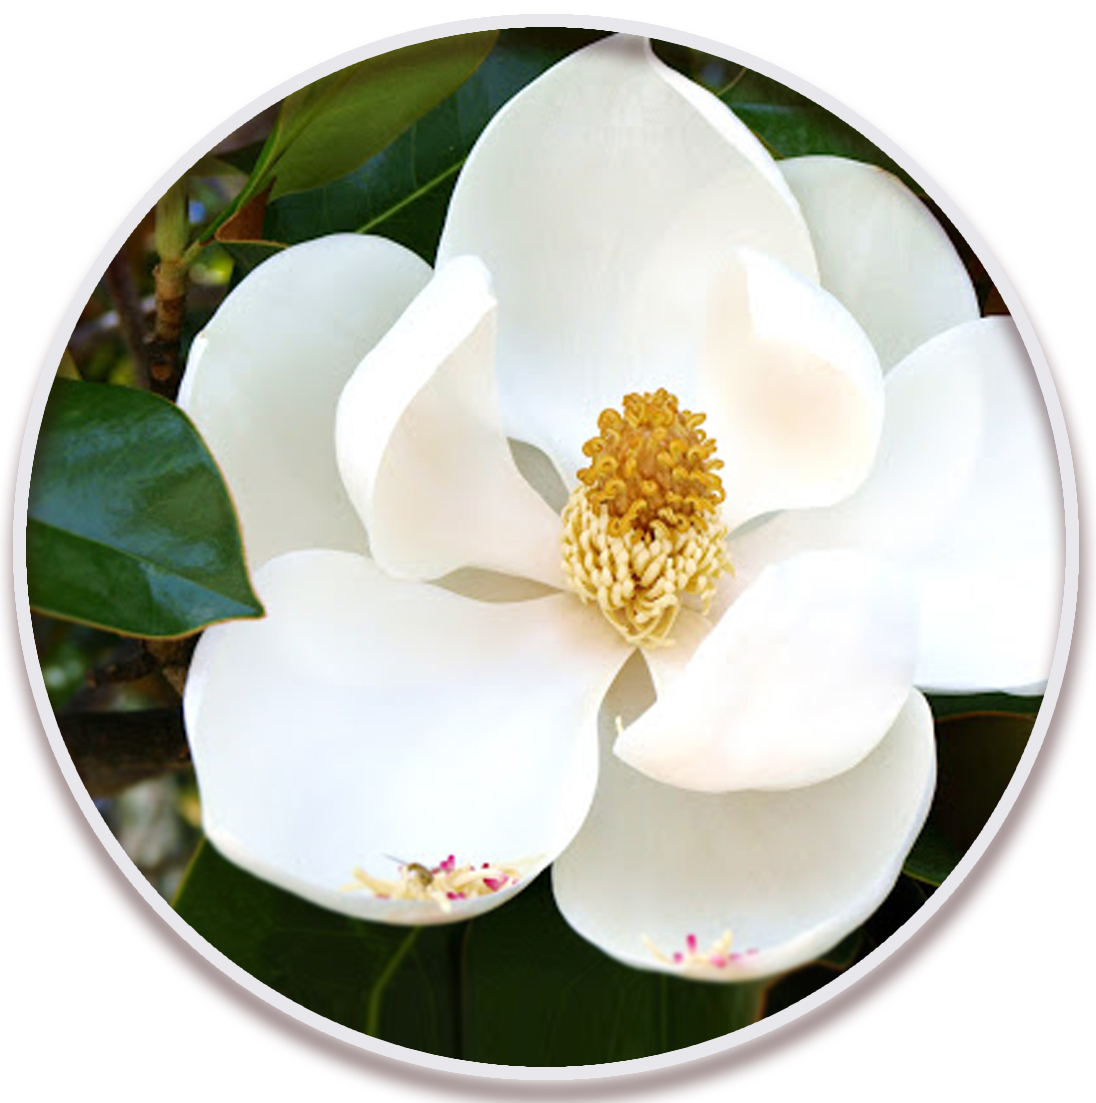 مگنولیا (Magnolia)در نهالستان میرنیا